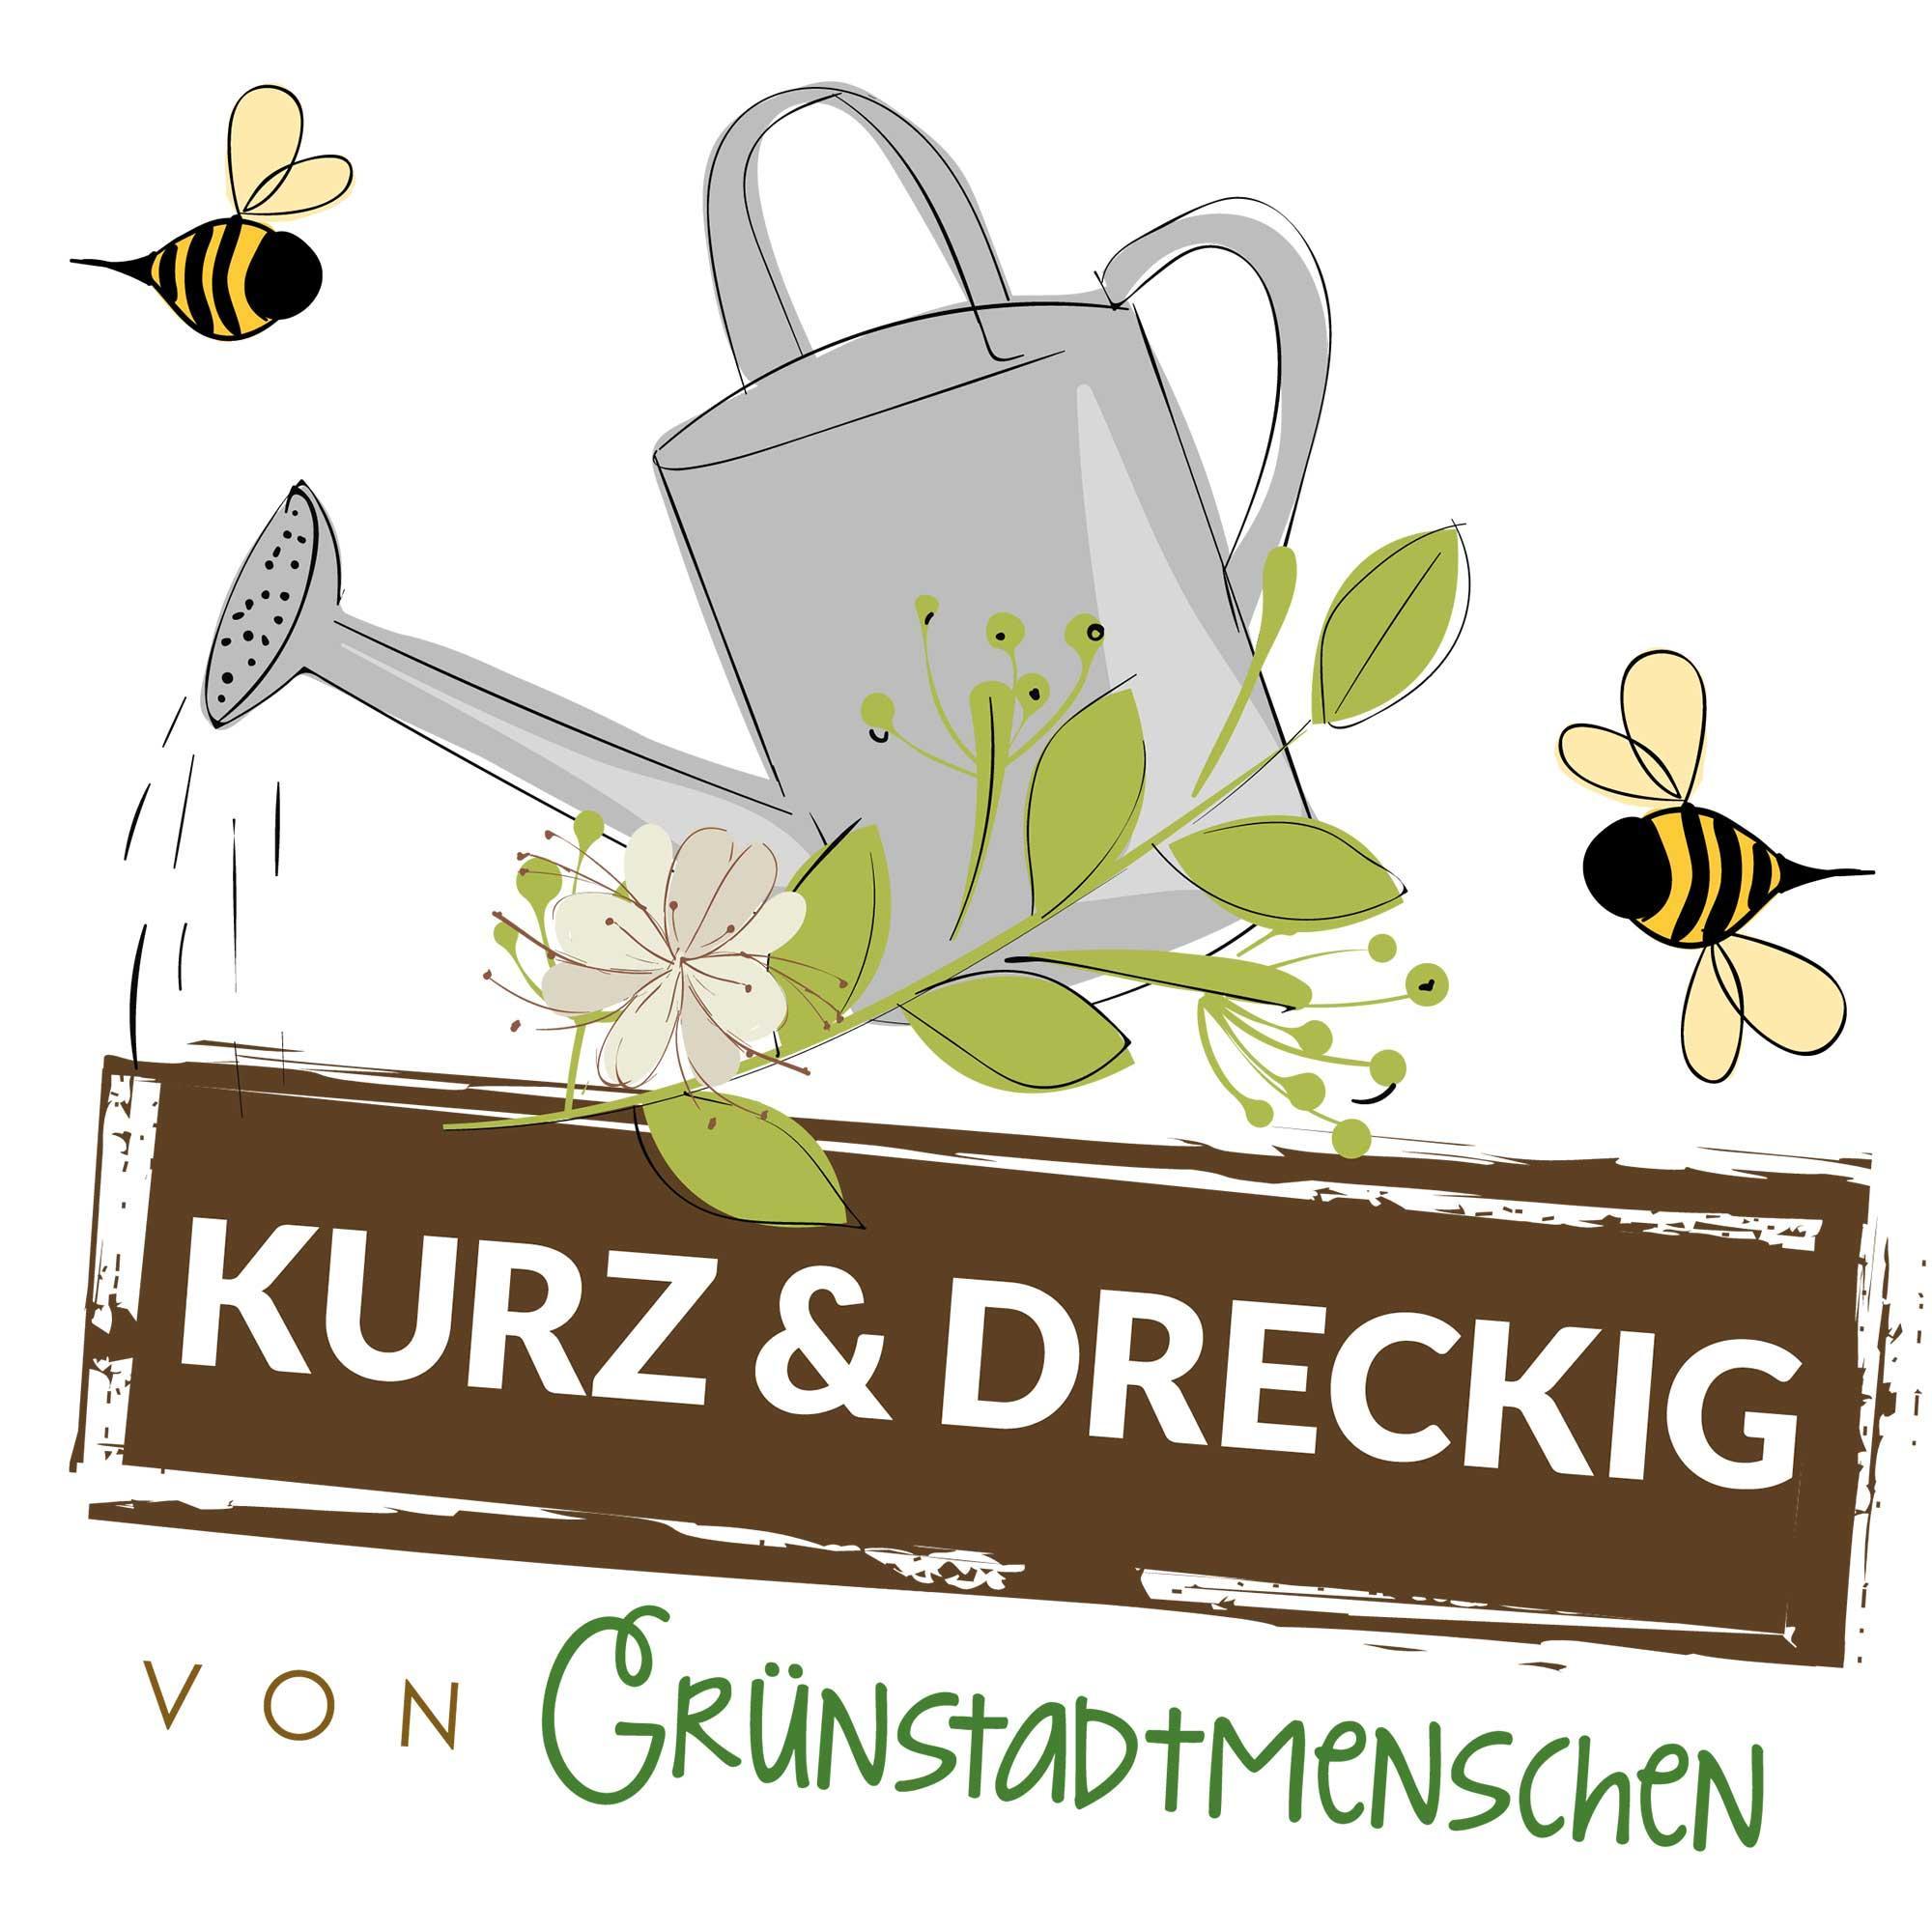 #29 Kurz & dreckig: Karinas Gartentipps für den März